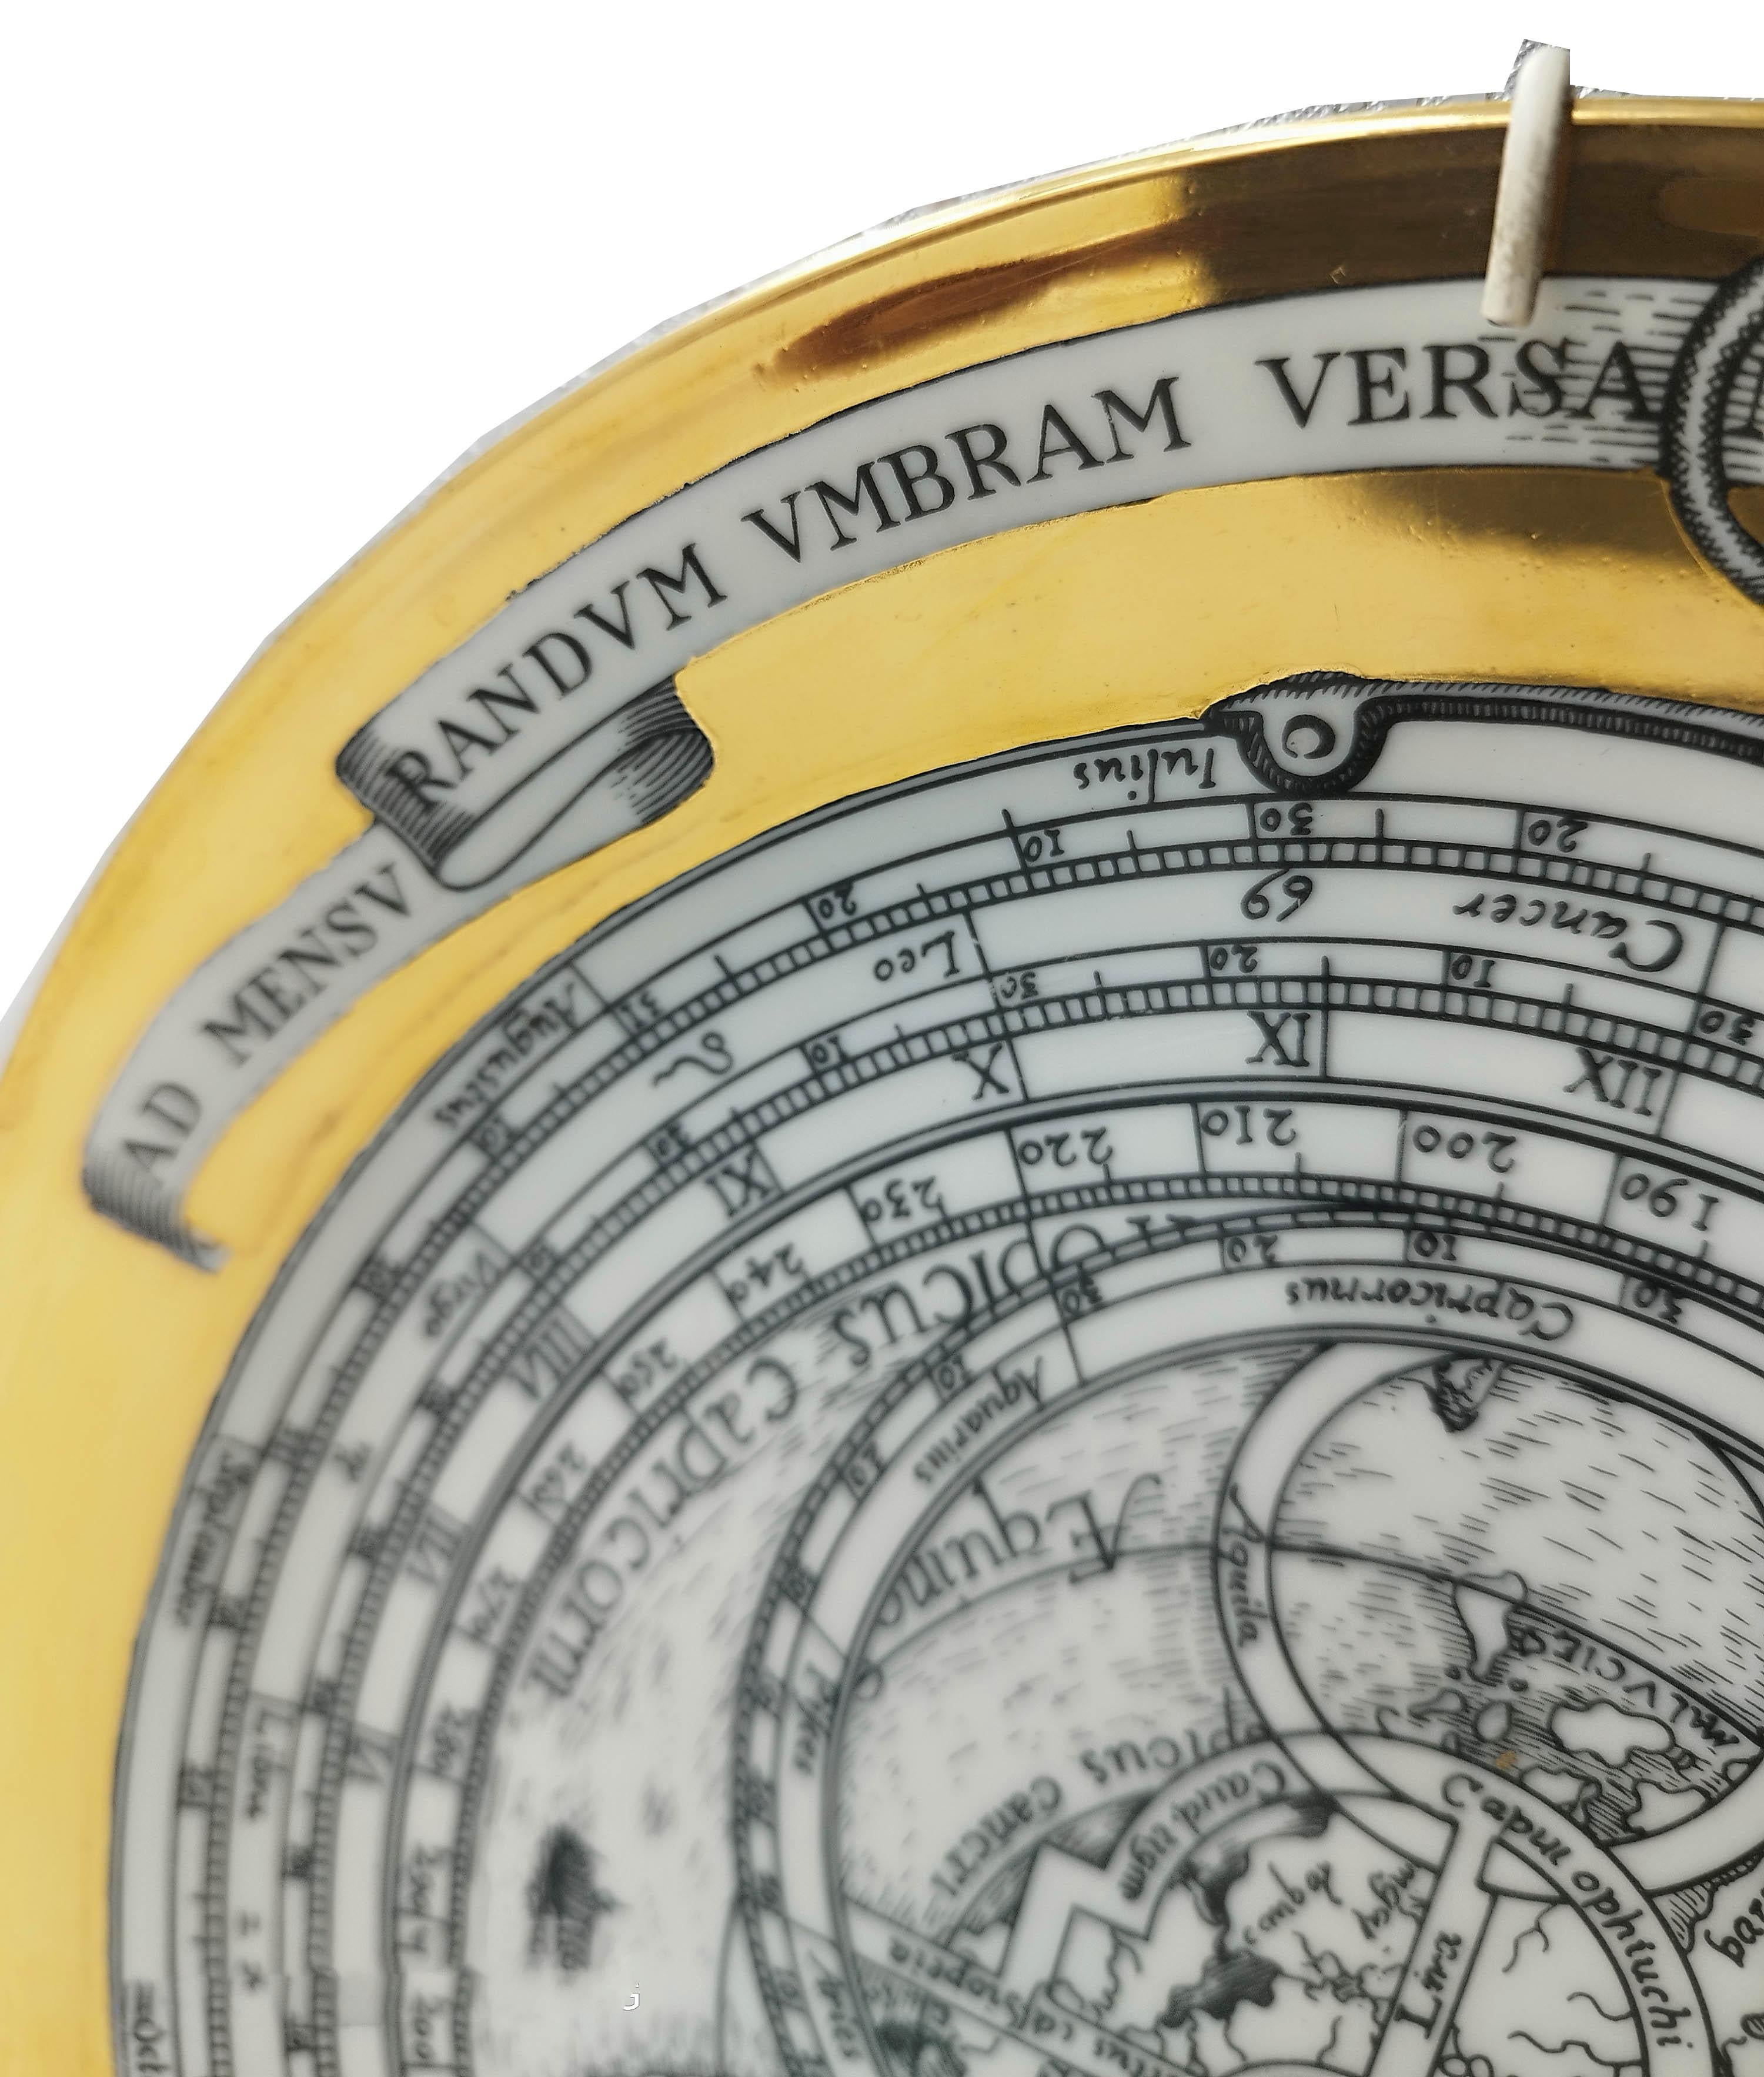 Assiette en porcelaine n° 4 de la série Astrolabe de douze pièces conçue par Piero Fornasetti entre 1965 et 1976. Chaque plaque représente un astrolabe, un inclinomètre élaboré de l'Antiquité classique utilisé par les astronomes, les navigateurs et